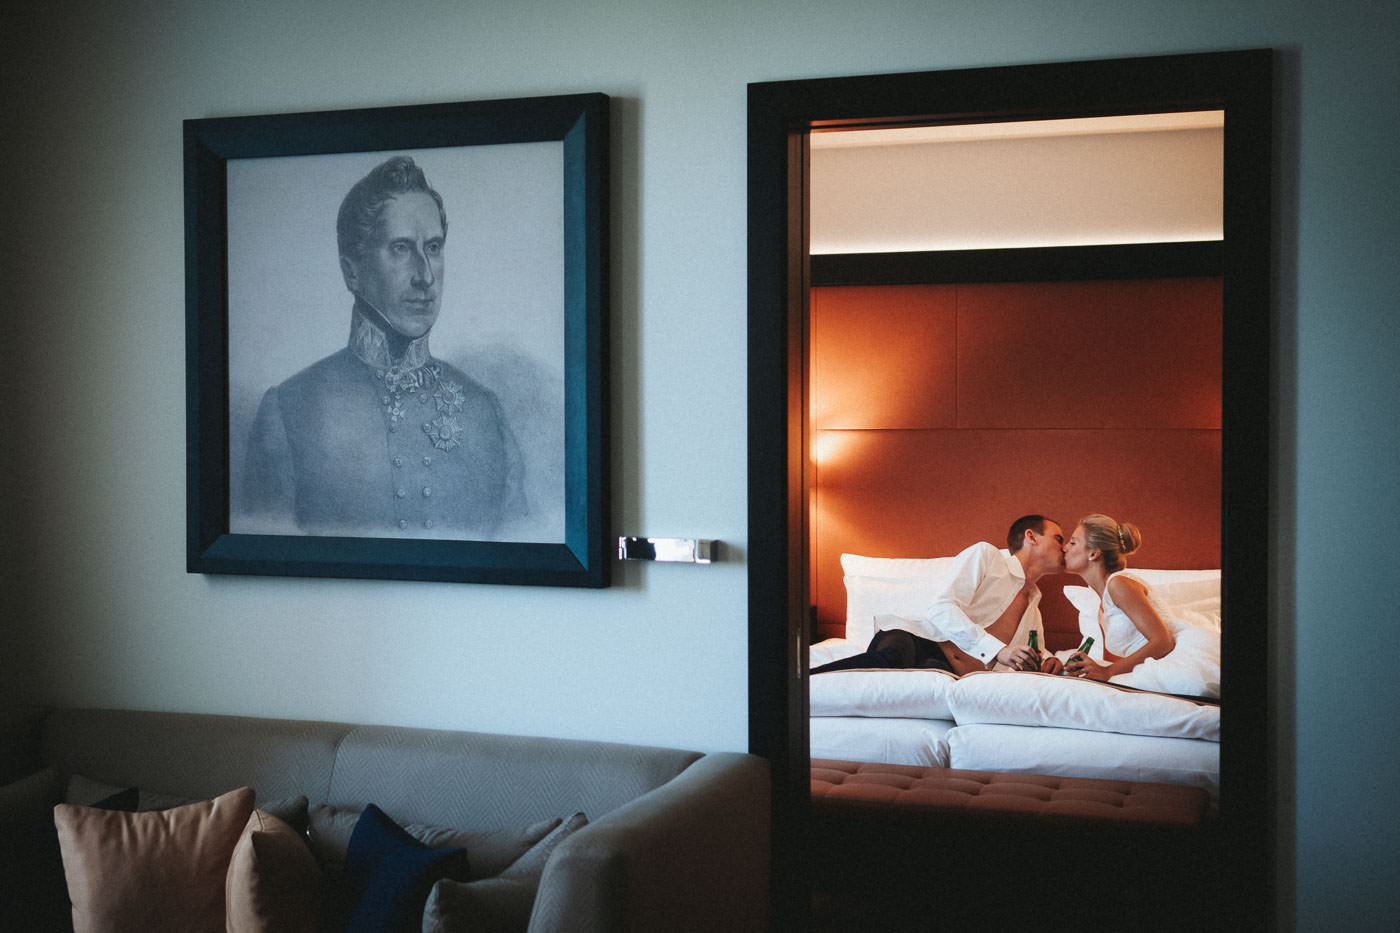 Brautpaar liegt küssend auf Bett in Hotelzimmer, sein Hemd geöffnet, beide mit Bierflasche in der Hand, Steigenberger Hotel Bad Homburg